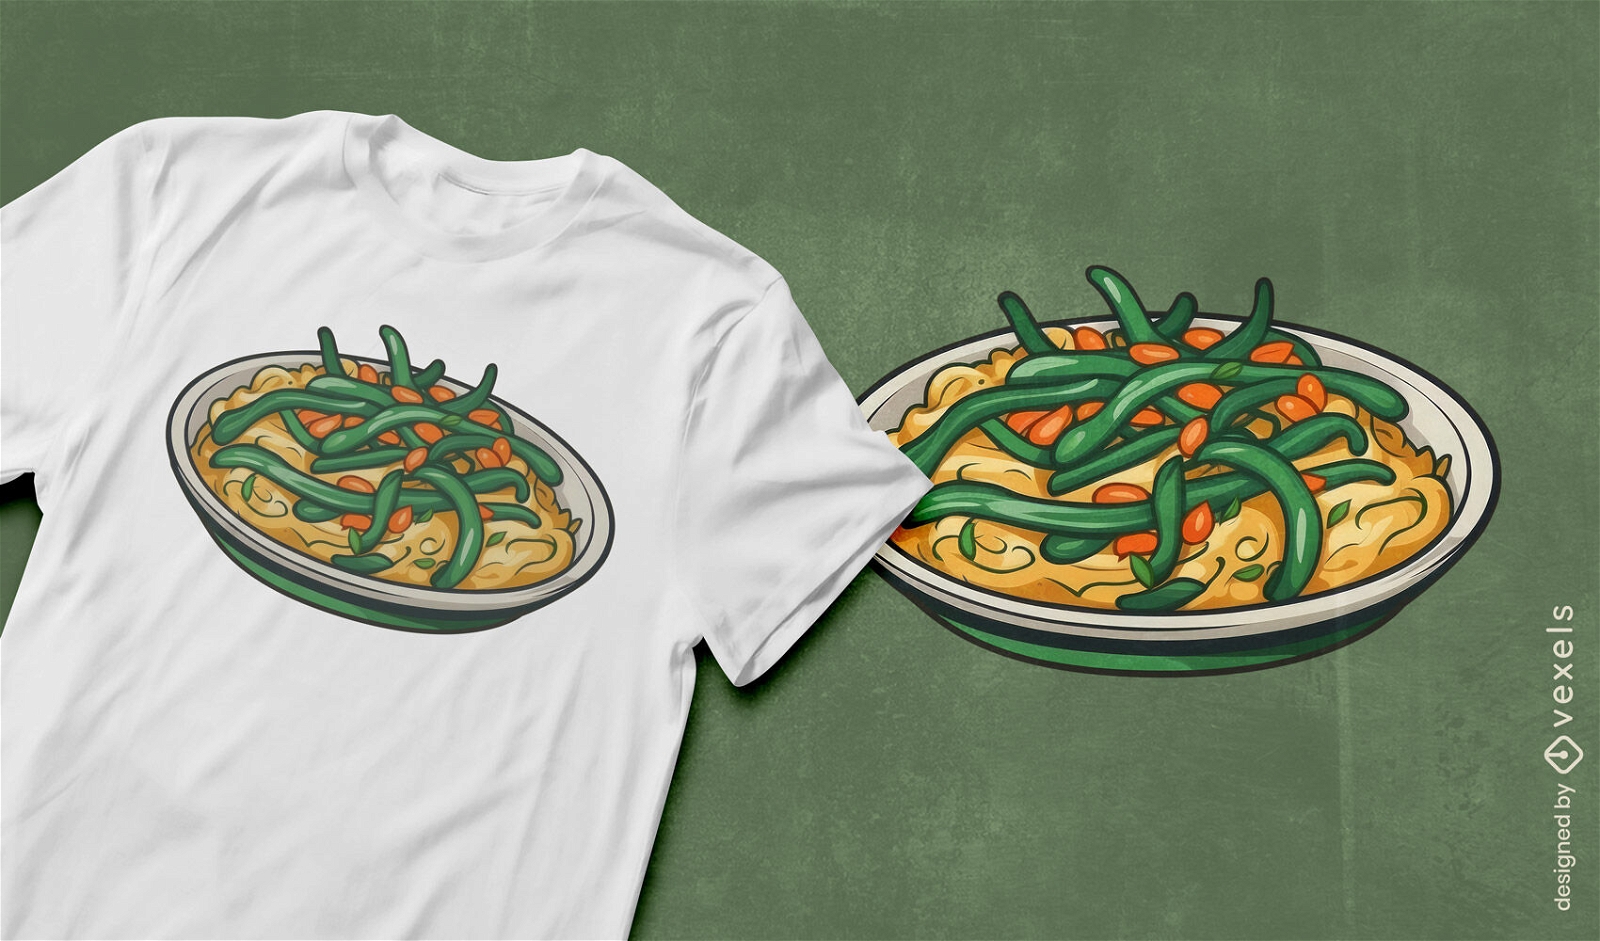 Green bean casserole t-shirt design